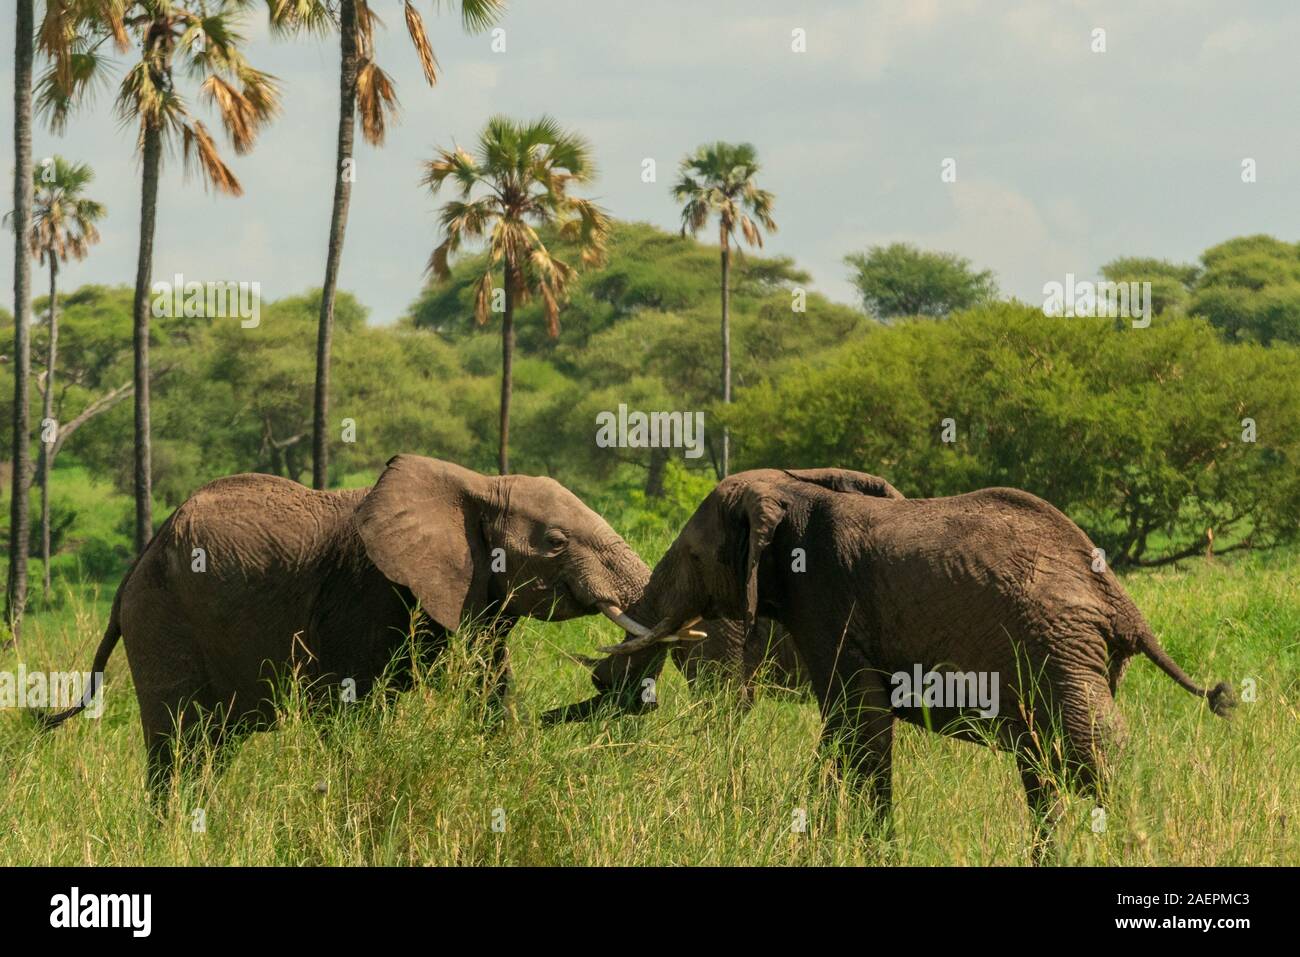 Gli elefanti maschi adolescenti bloccano le zanne in uno spettacolo di forza e dominanza nel Parco Nazionale di Tarangire, Tanzania. (Nome scientifico: Loxodonta) Foto Stock